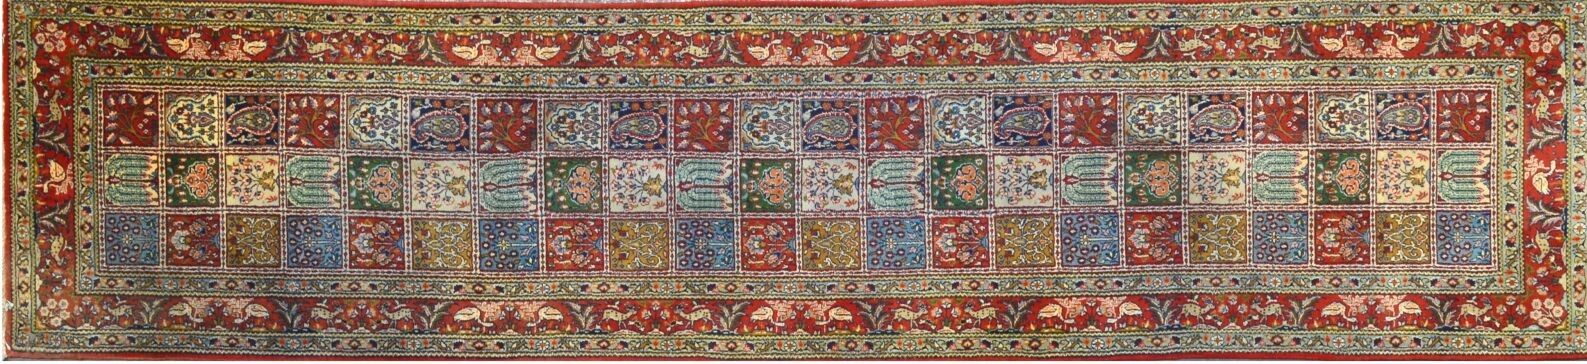 Null 大型和精细的穆德画廊，伊朗，在Ghoum传统，大约1970年

棉质地面上的丝质羊羔毛绒

边缘有风格化的鸟类和动物

花园装饰

美丽的多色性

3&hellip;